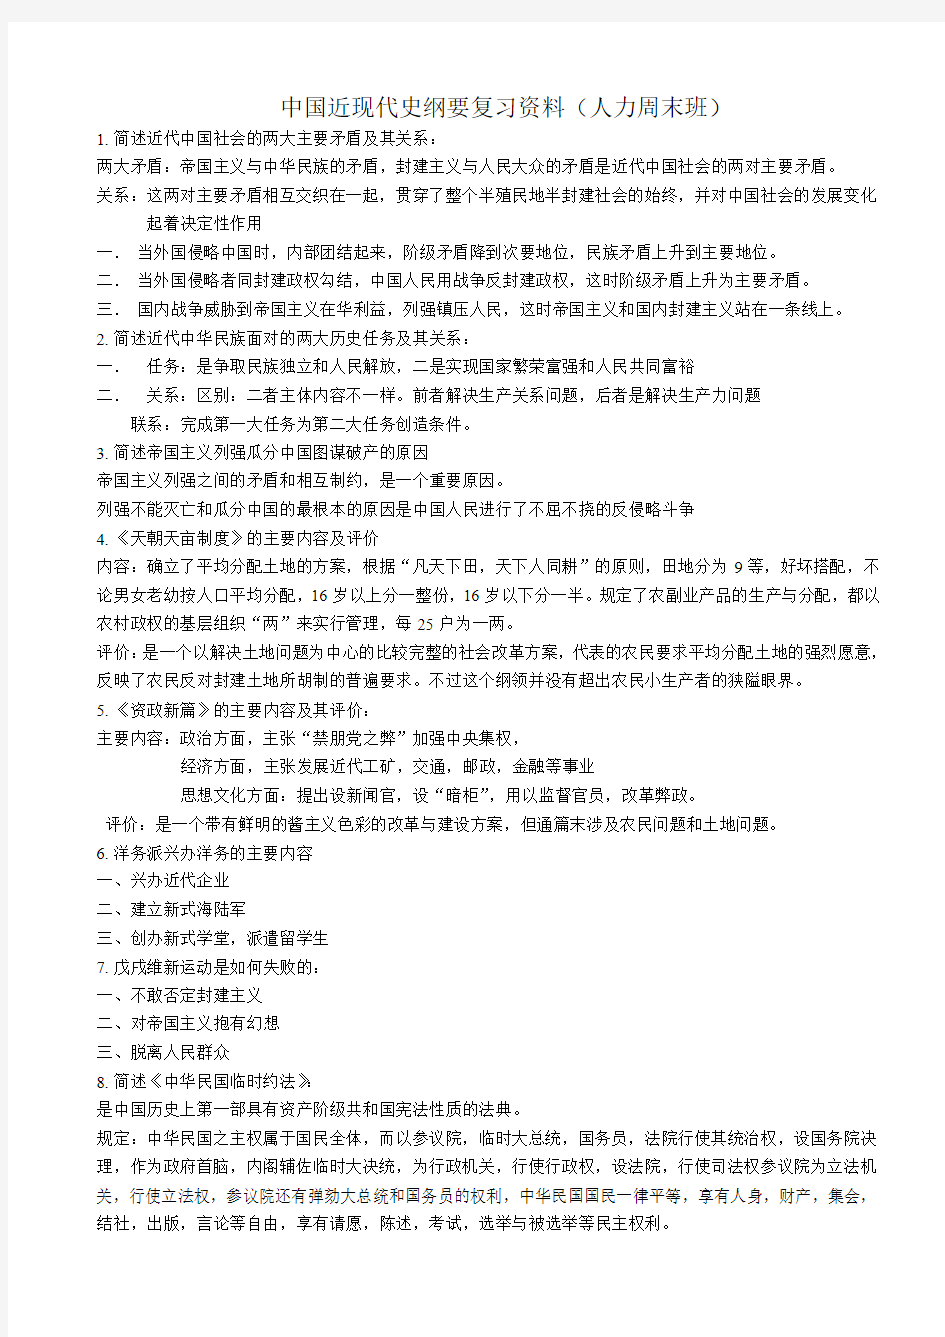 2014年自考《中国近现代史纲要》复习资料(完整版)